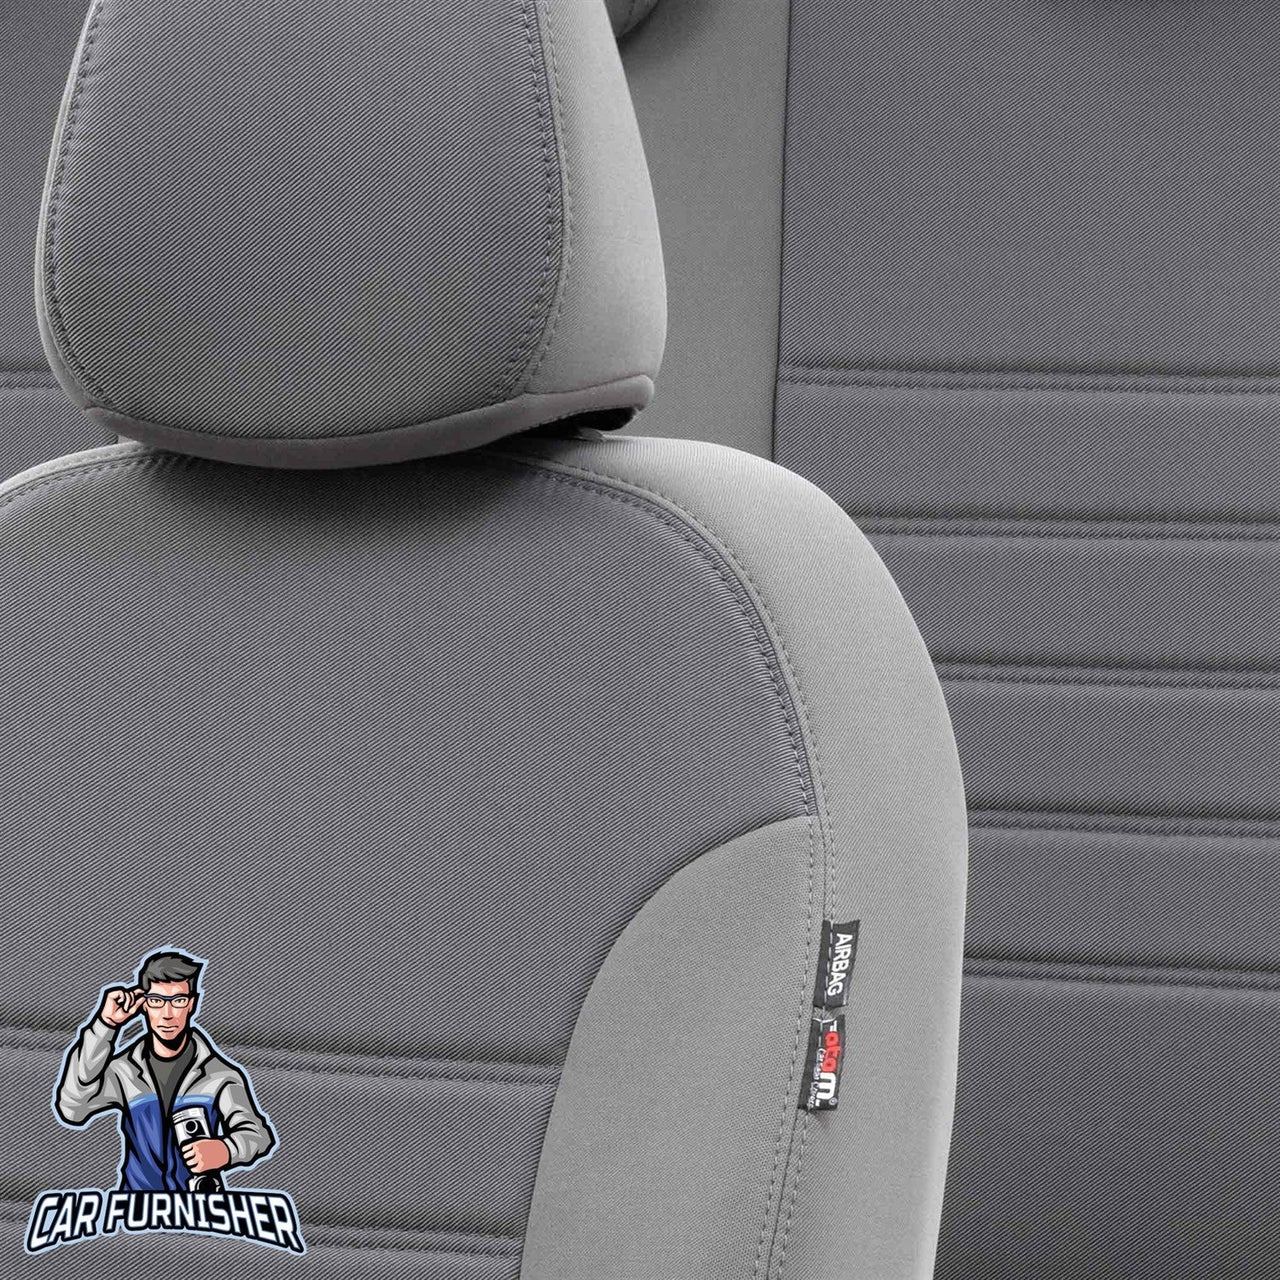 Bmw X3 Seat Cover Original Jacquard Design Gray Jacquard Fabric